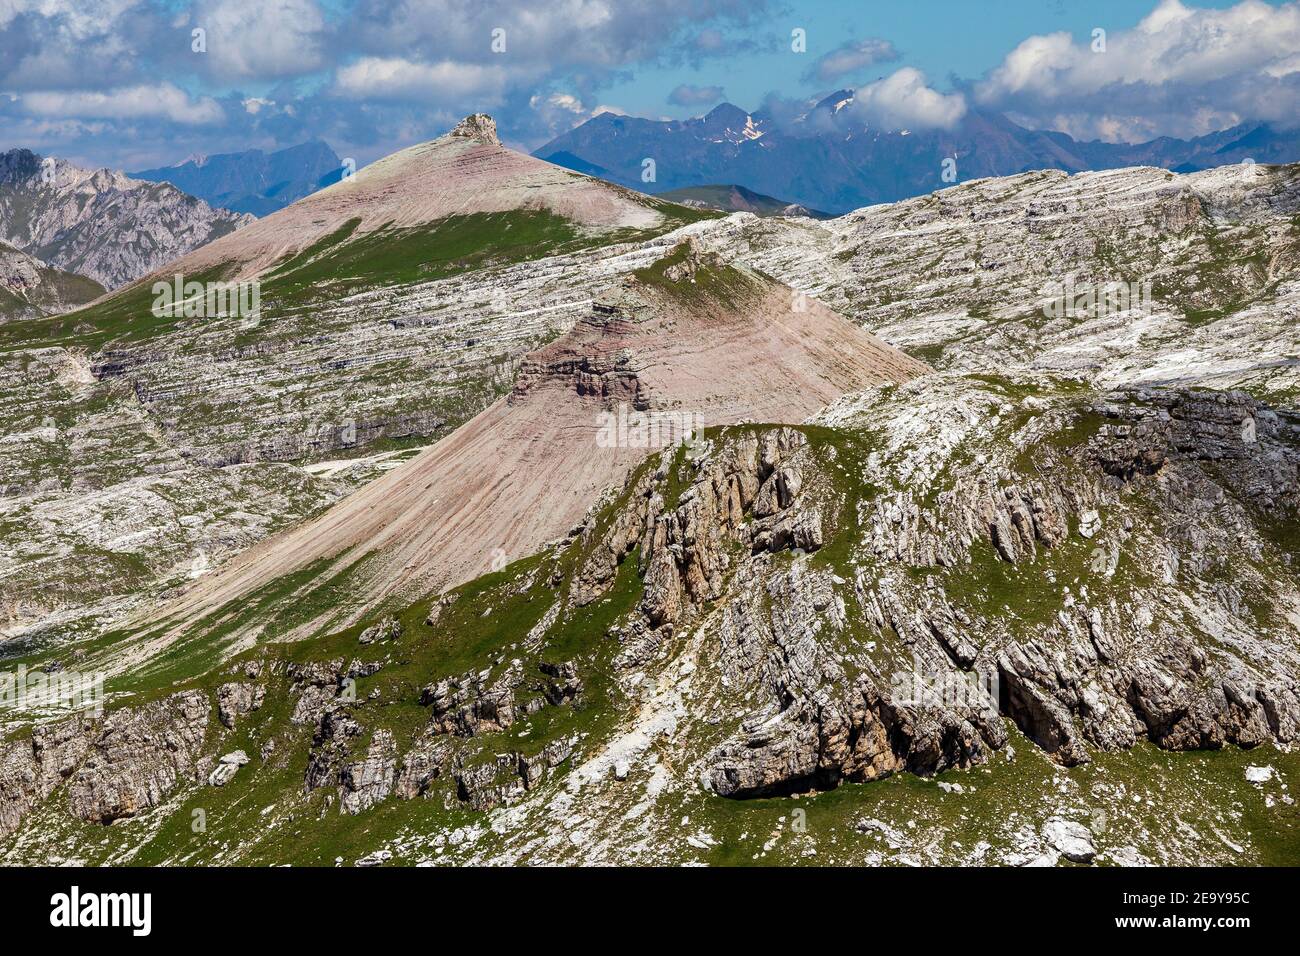 View on Col de la Soné, Gardenaccia karst plateau. The Dolomites of the Puez-Odle natural park. Italian Alps. Europe. Stock Photo